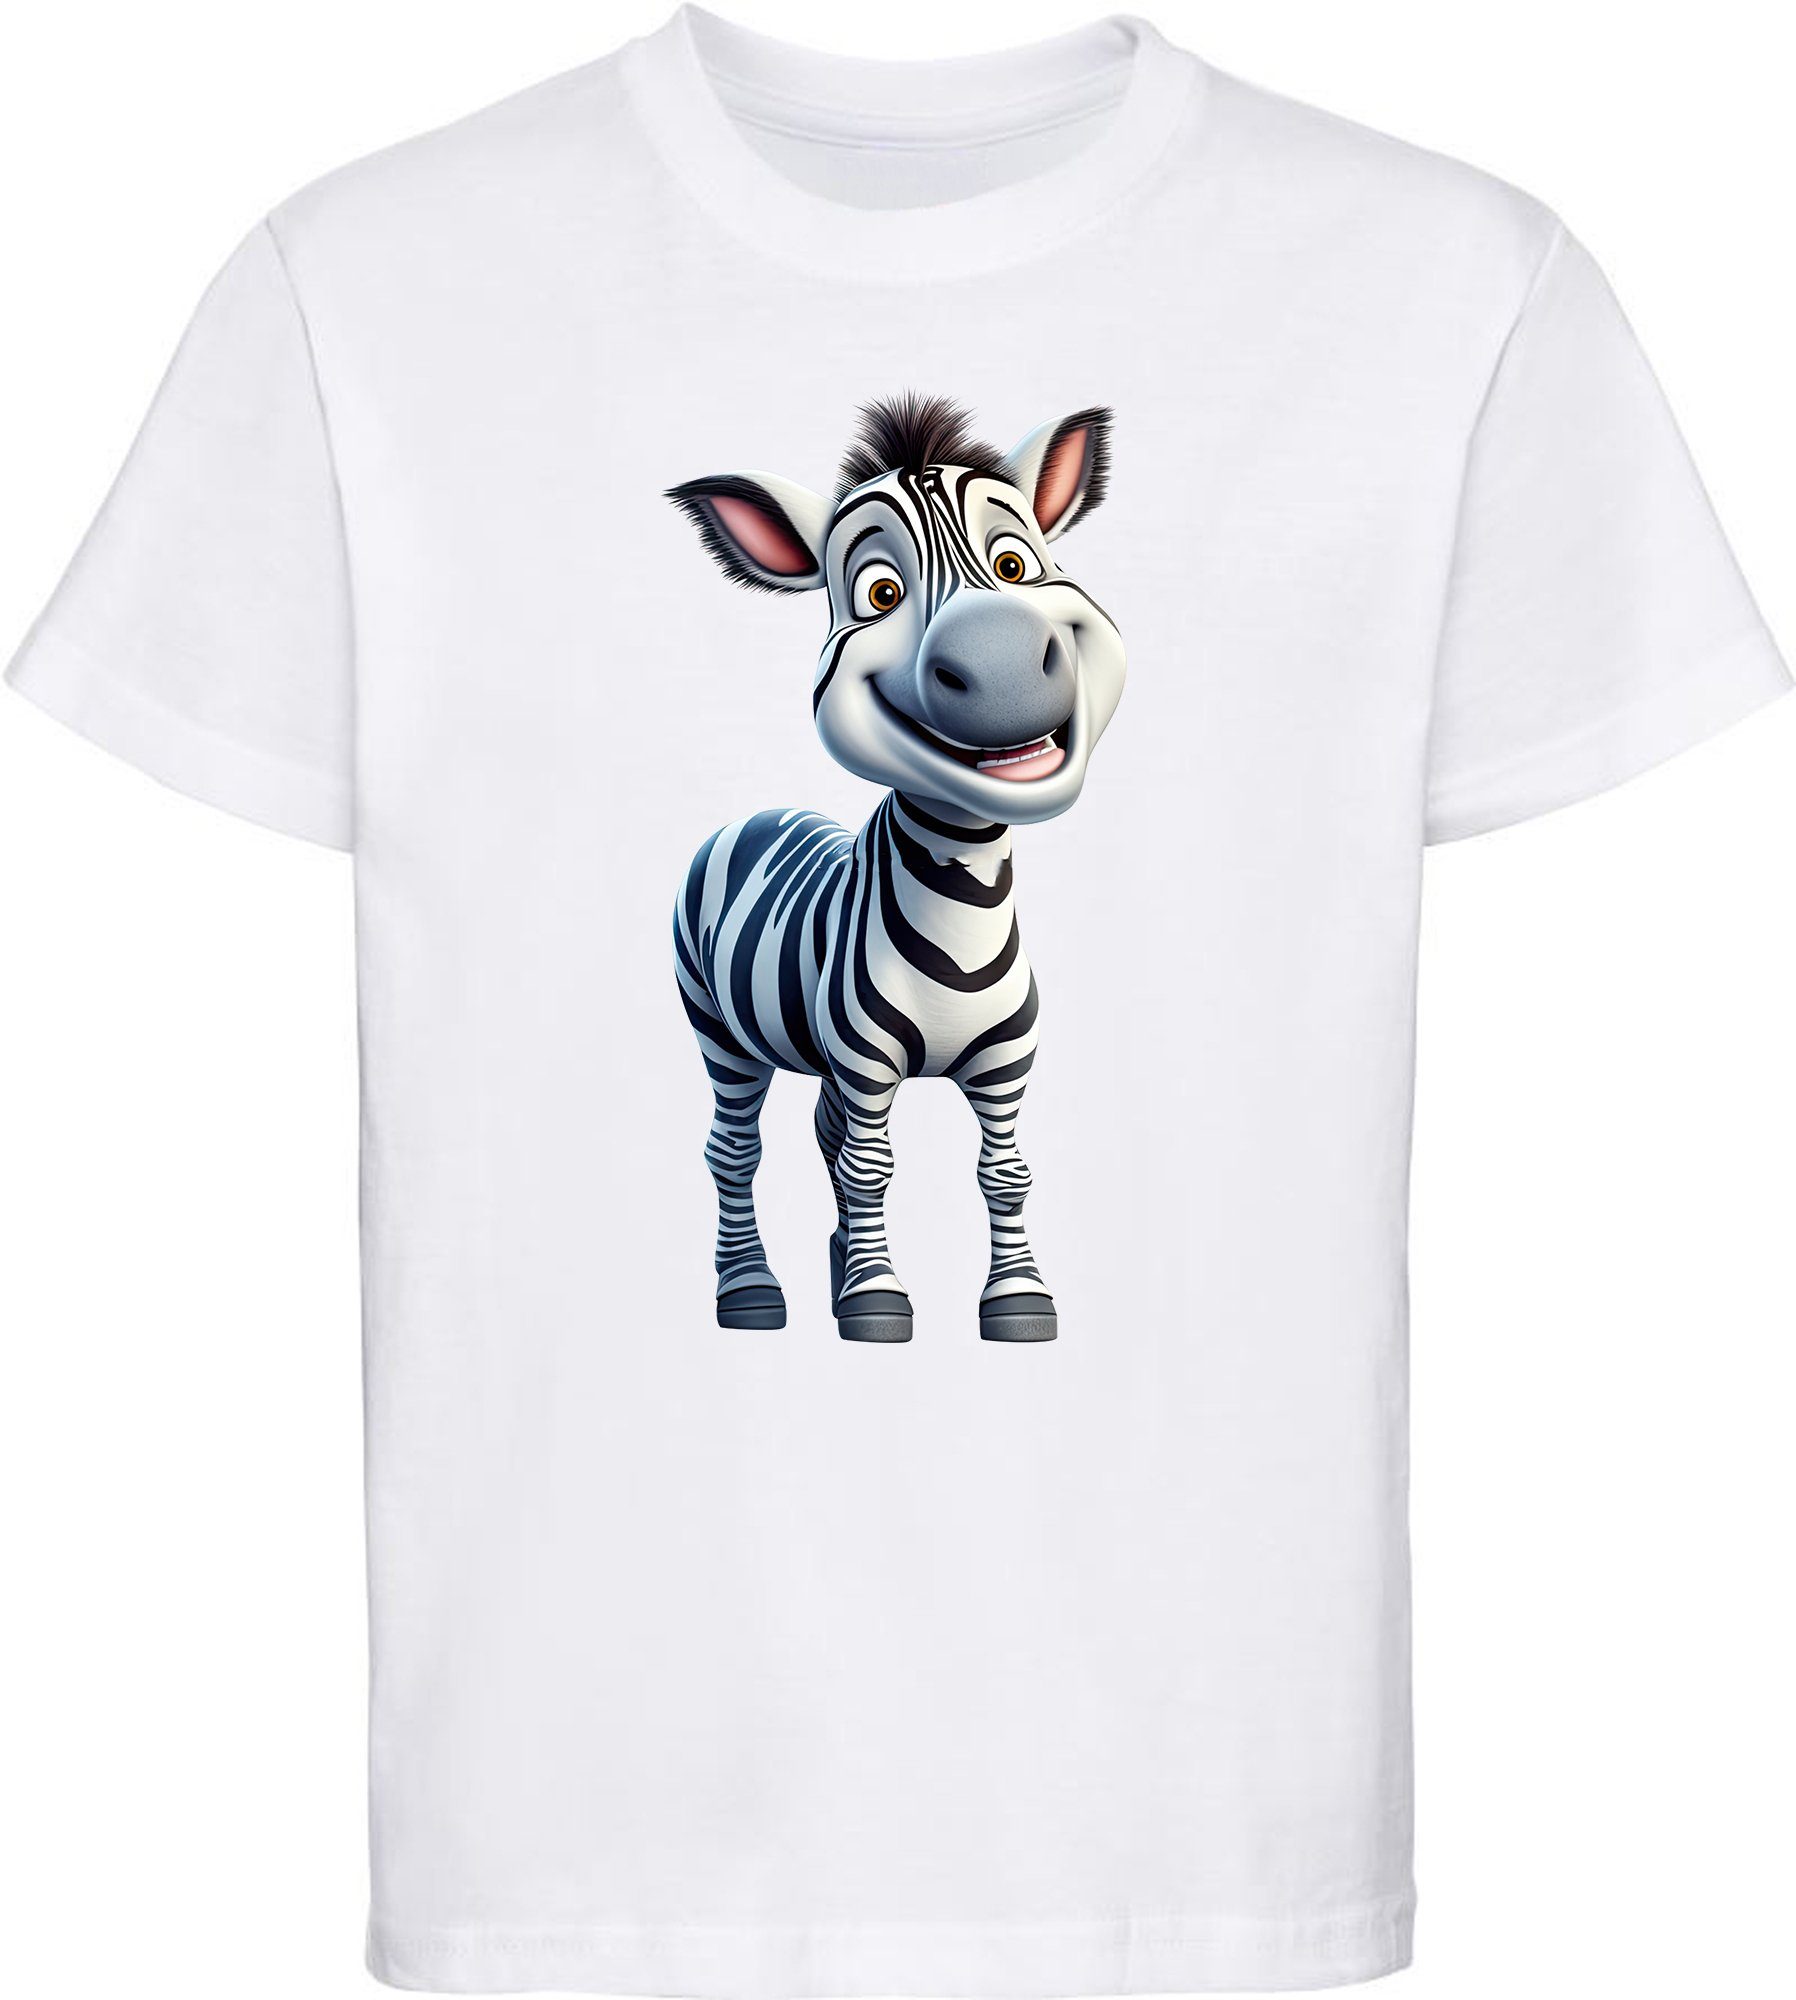 MyDesign24 Baby i280 Zebra Kinder Print Baumwollshirt Shirt weiss Wildtier - bedruckt T-Shirt mit Aufdruck,